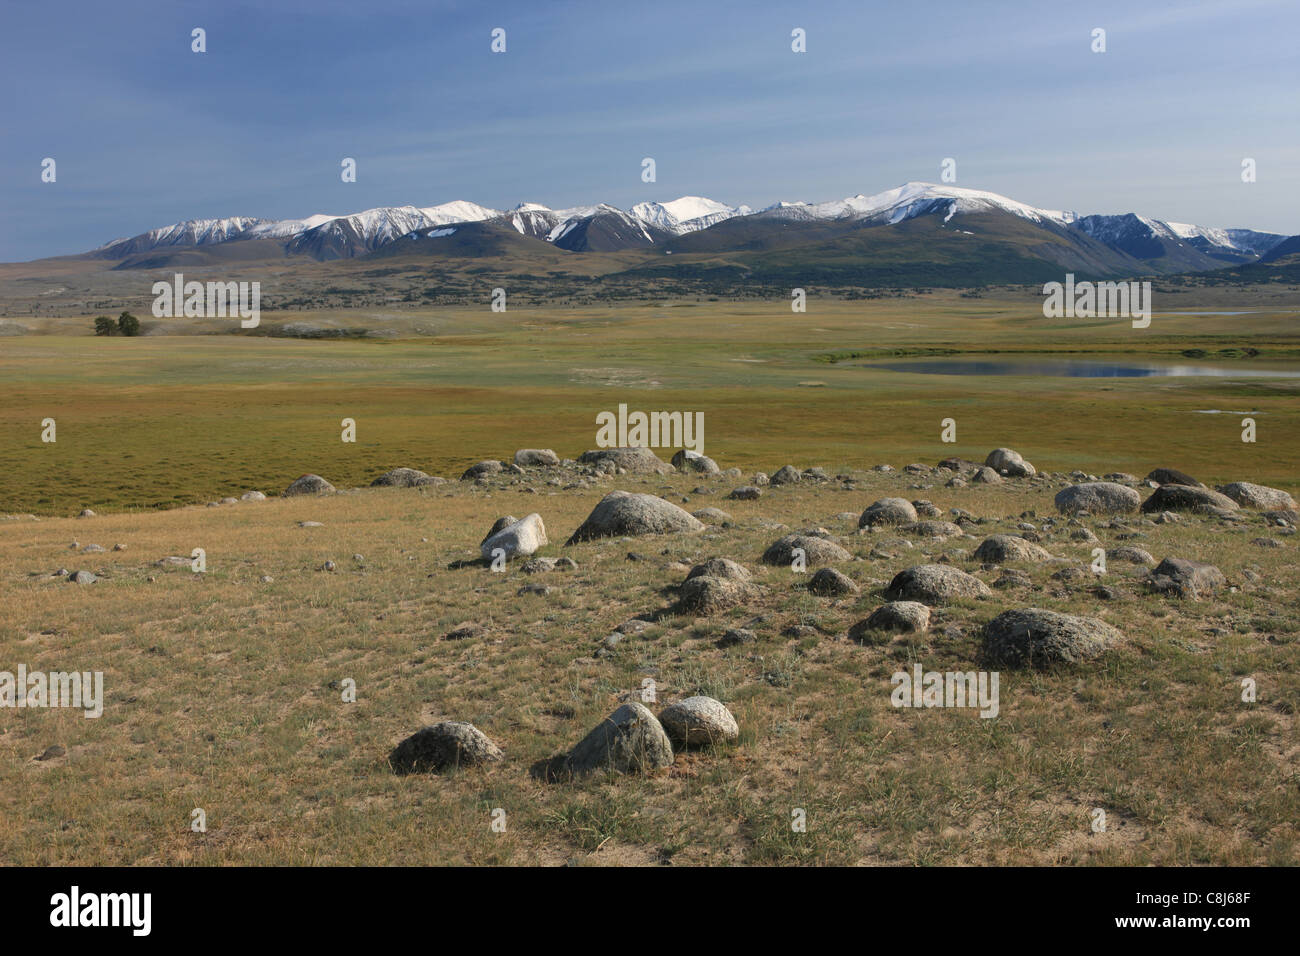 Le Parc National de l'Altaï Tavan Bogd, Hurgan Nuur, Bayan Ölgii, Mongolie, Altaï mongol, montagnes, Mountain-Valley, à l'ouest de la Mongolie, Banque D'Images